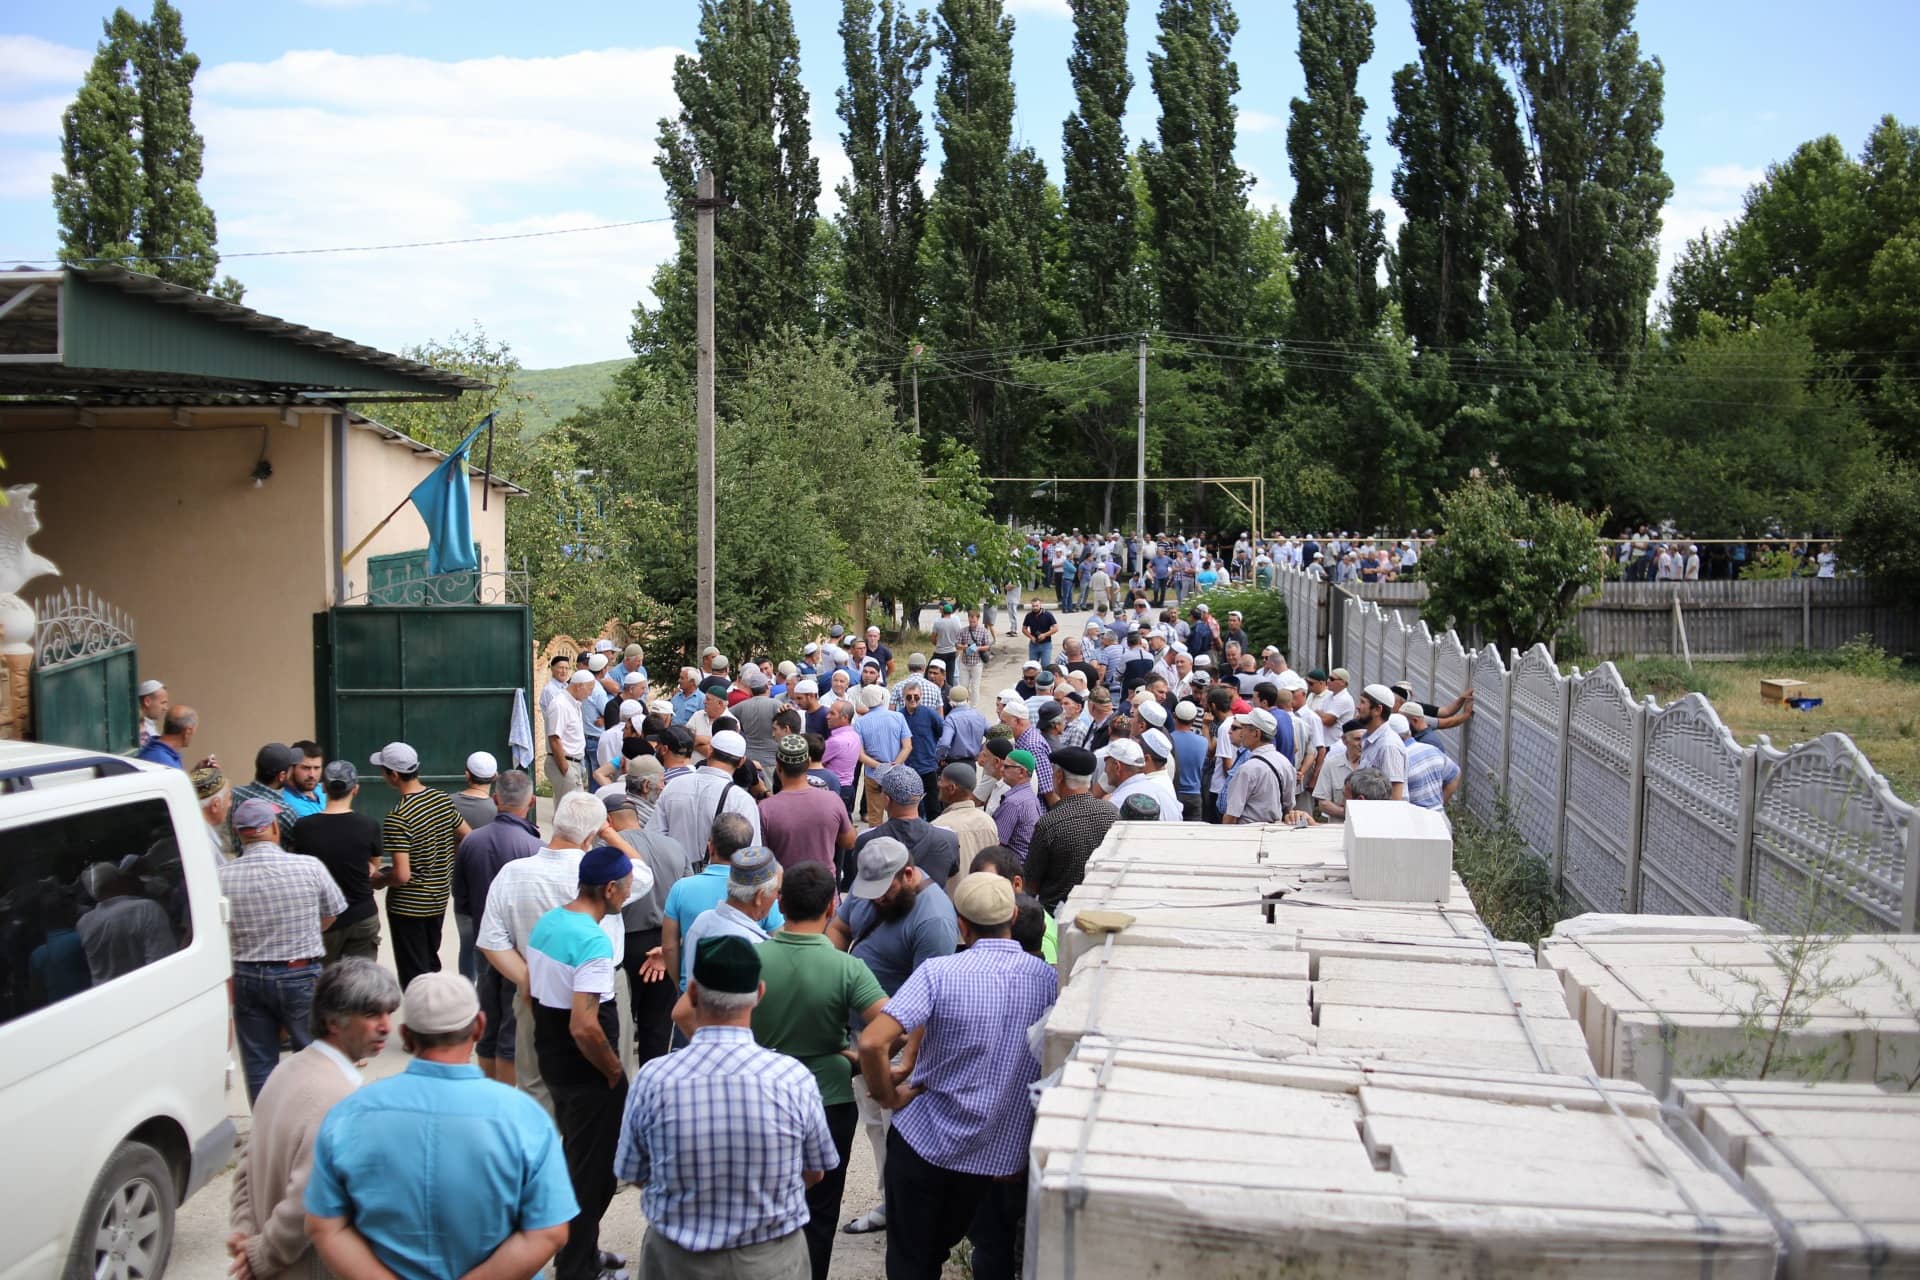 В Криму на похорон активіста Сервера Караметова прийшли 2000 людей (ФОТО, ВІДЕО)